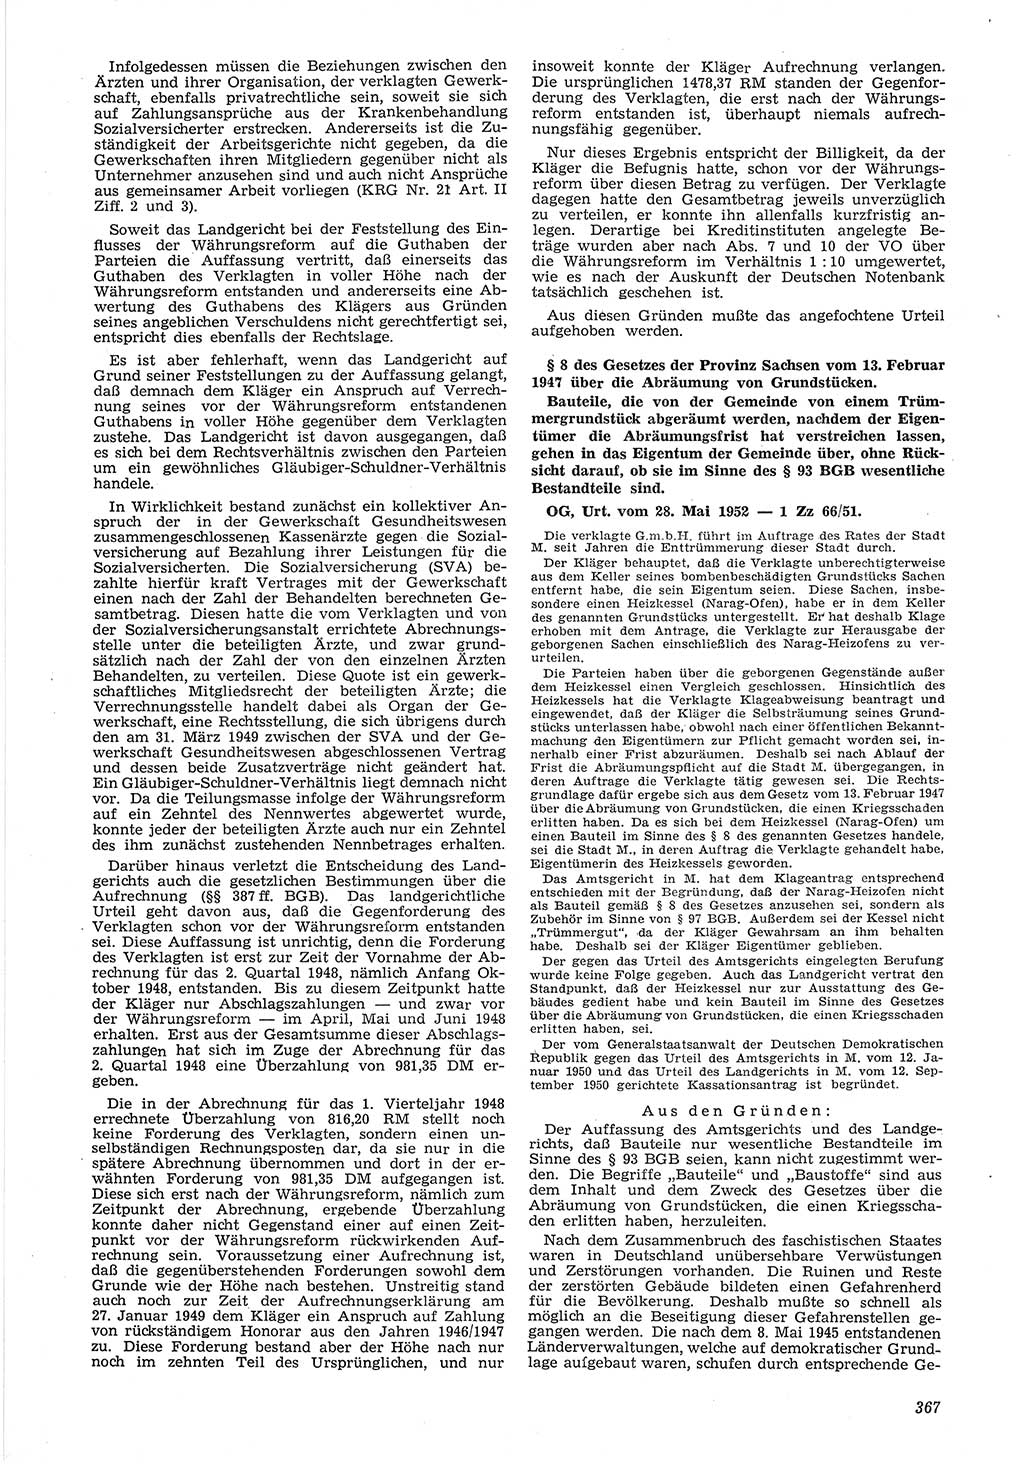 Neue Justiz (NJ), Zeitschrift für Recht und Rechtswissenschaft [Deutsche Demokratische Republik (DDR)], 6. Jahrgang 1952, Seite 367 (NJ DDR 1952, S. 367)